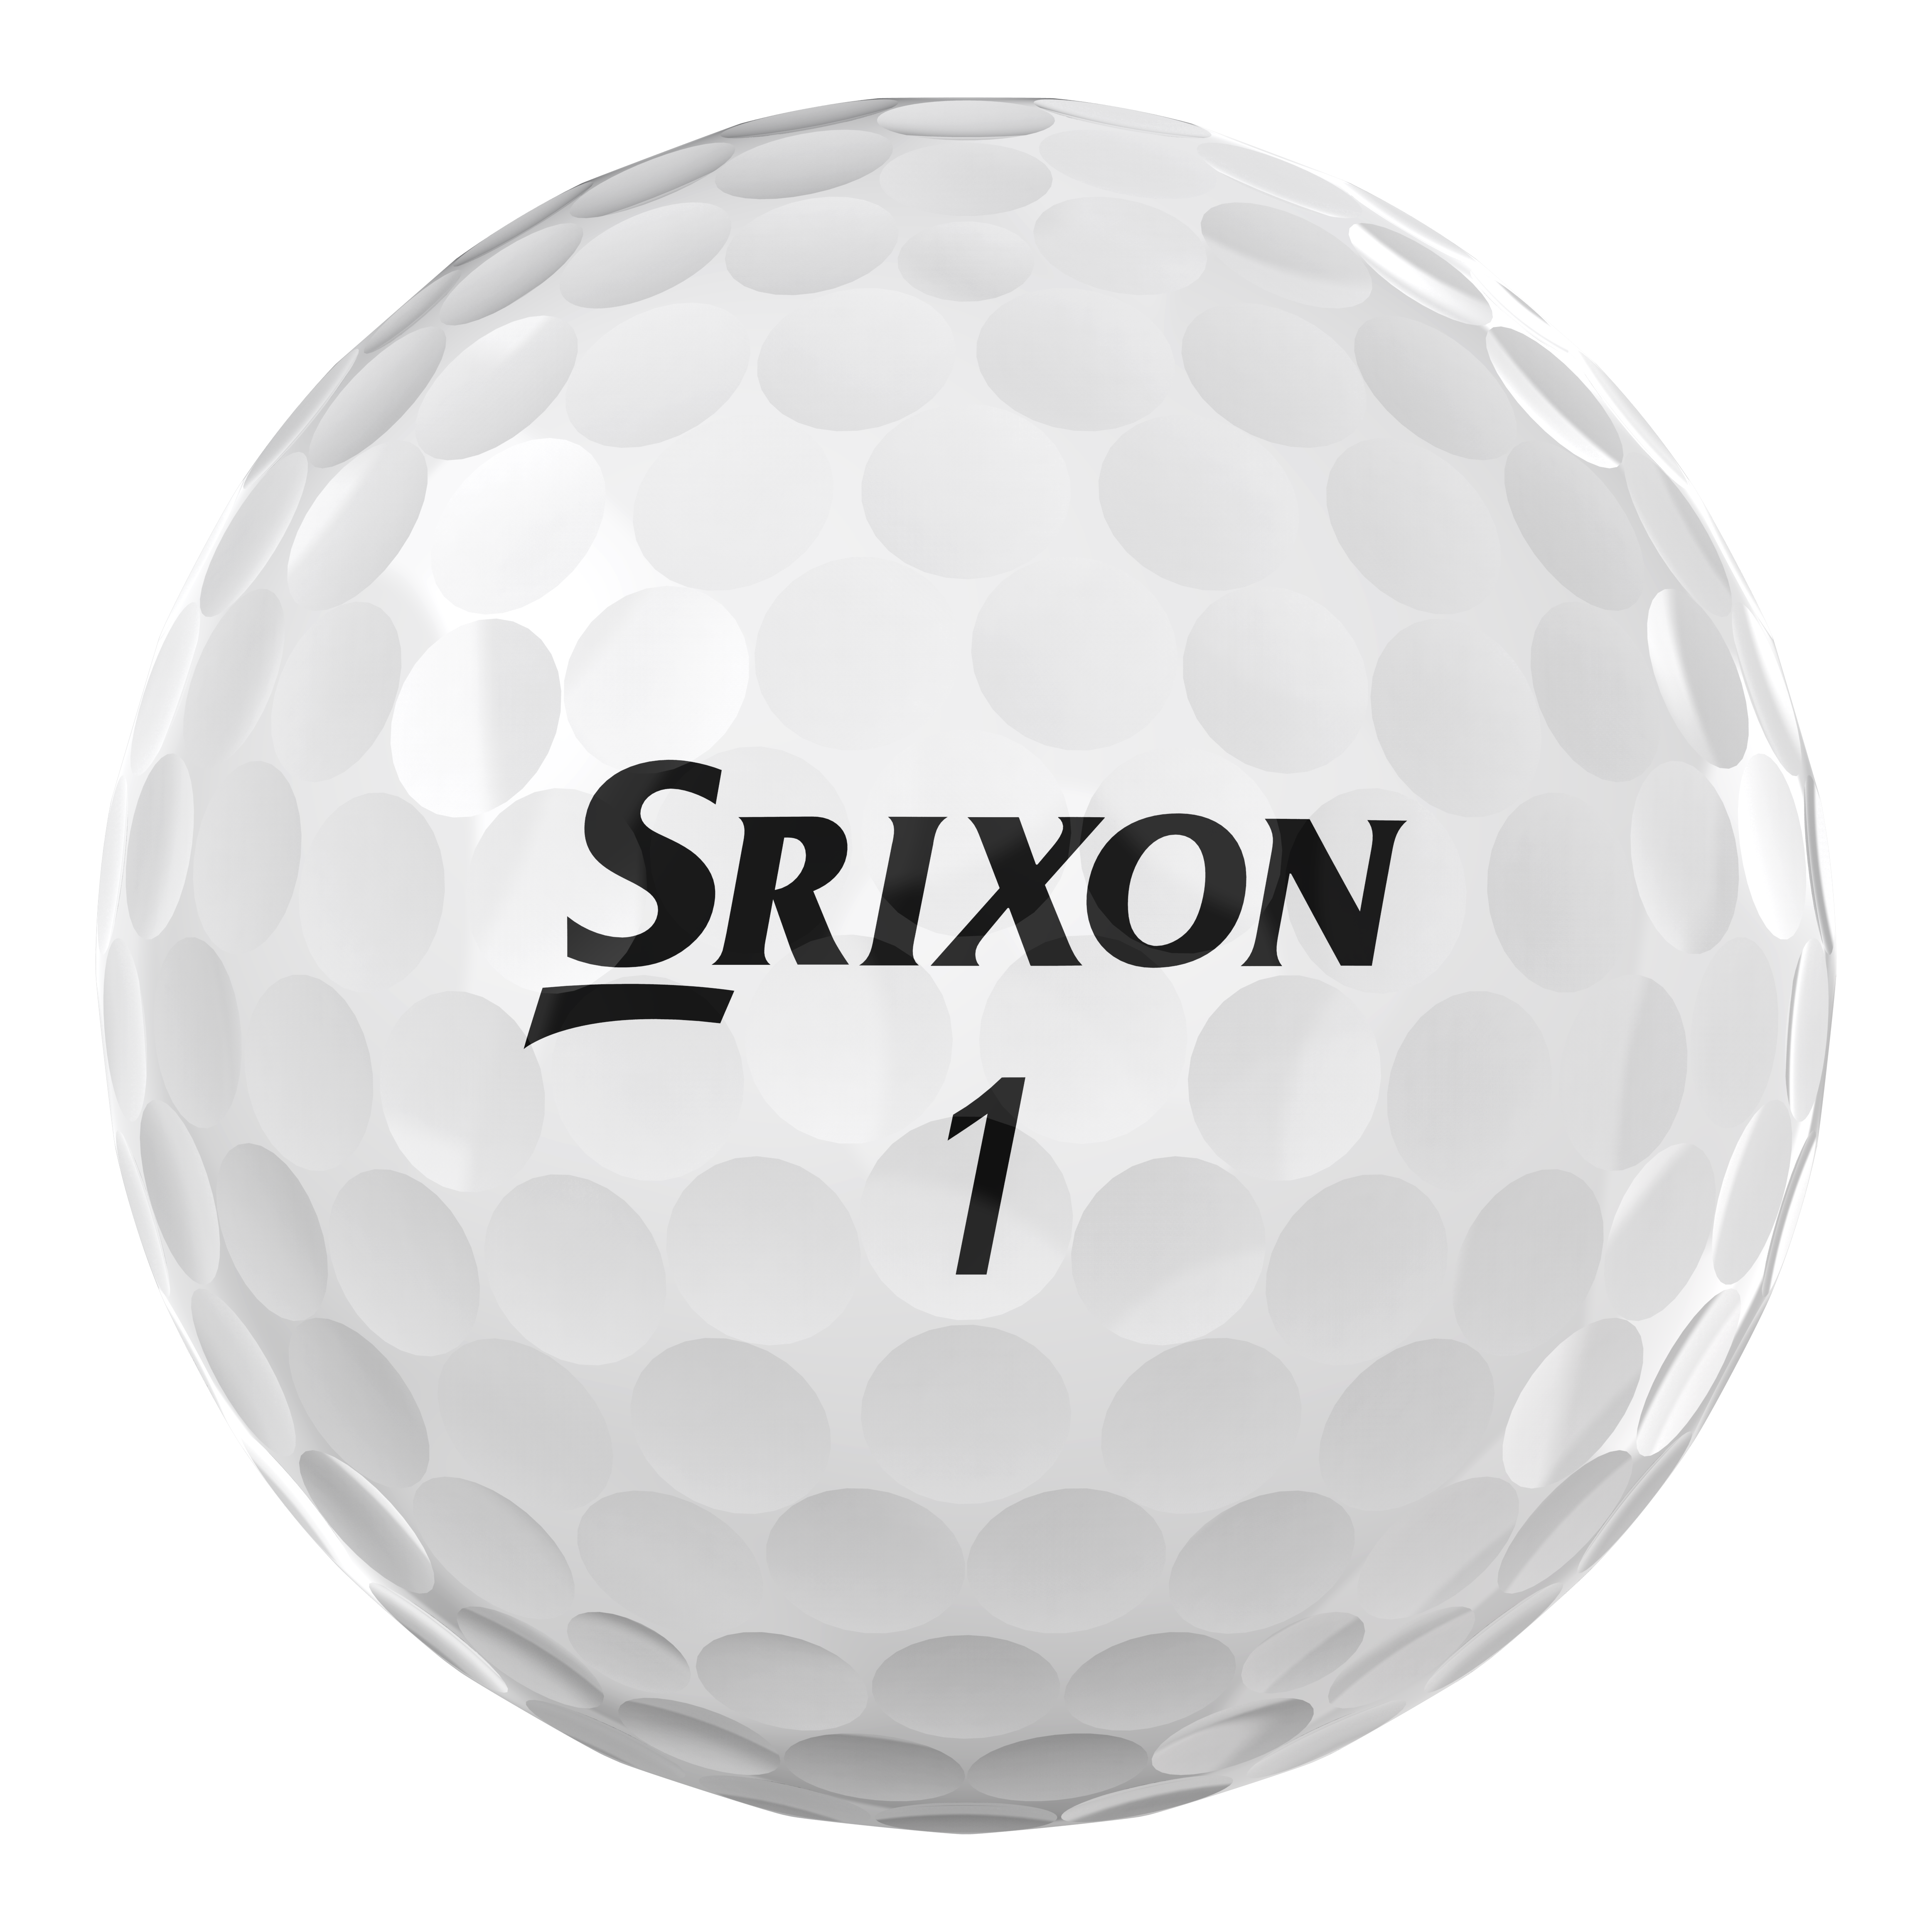 Srixon Q-Star Tour Golfbälle bedruckt, weiss (VPE à 12 Bälle)